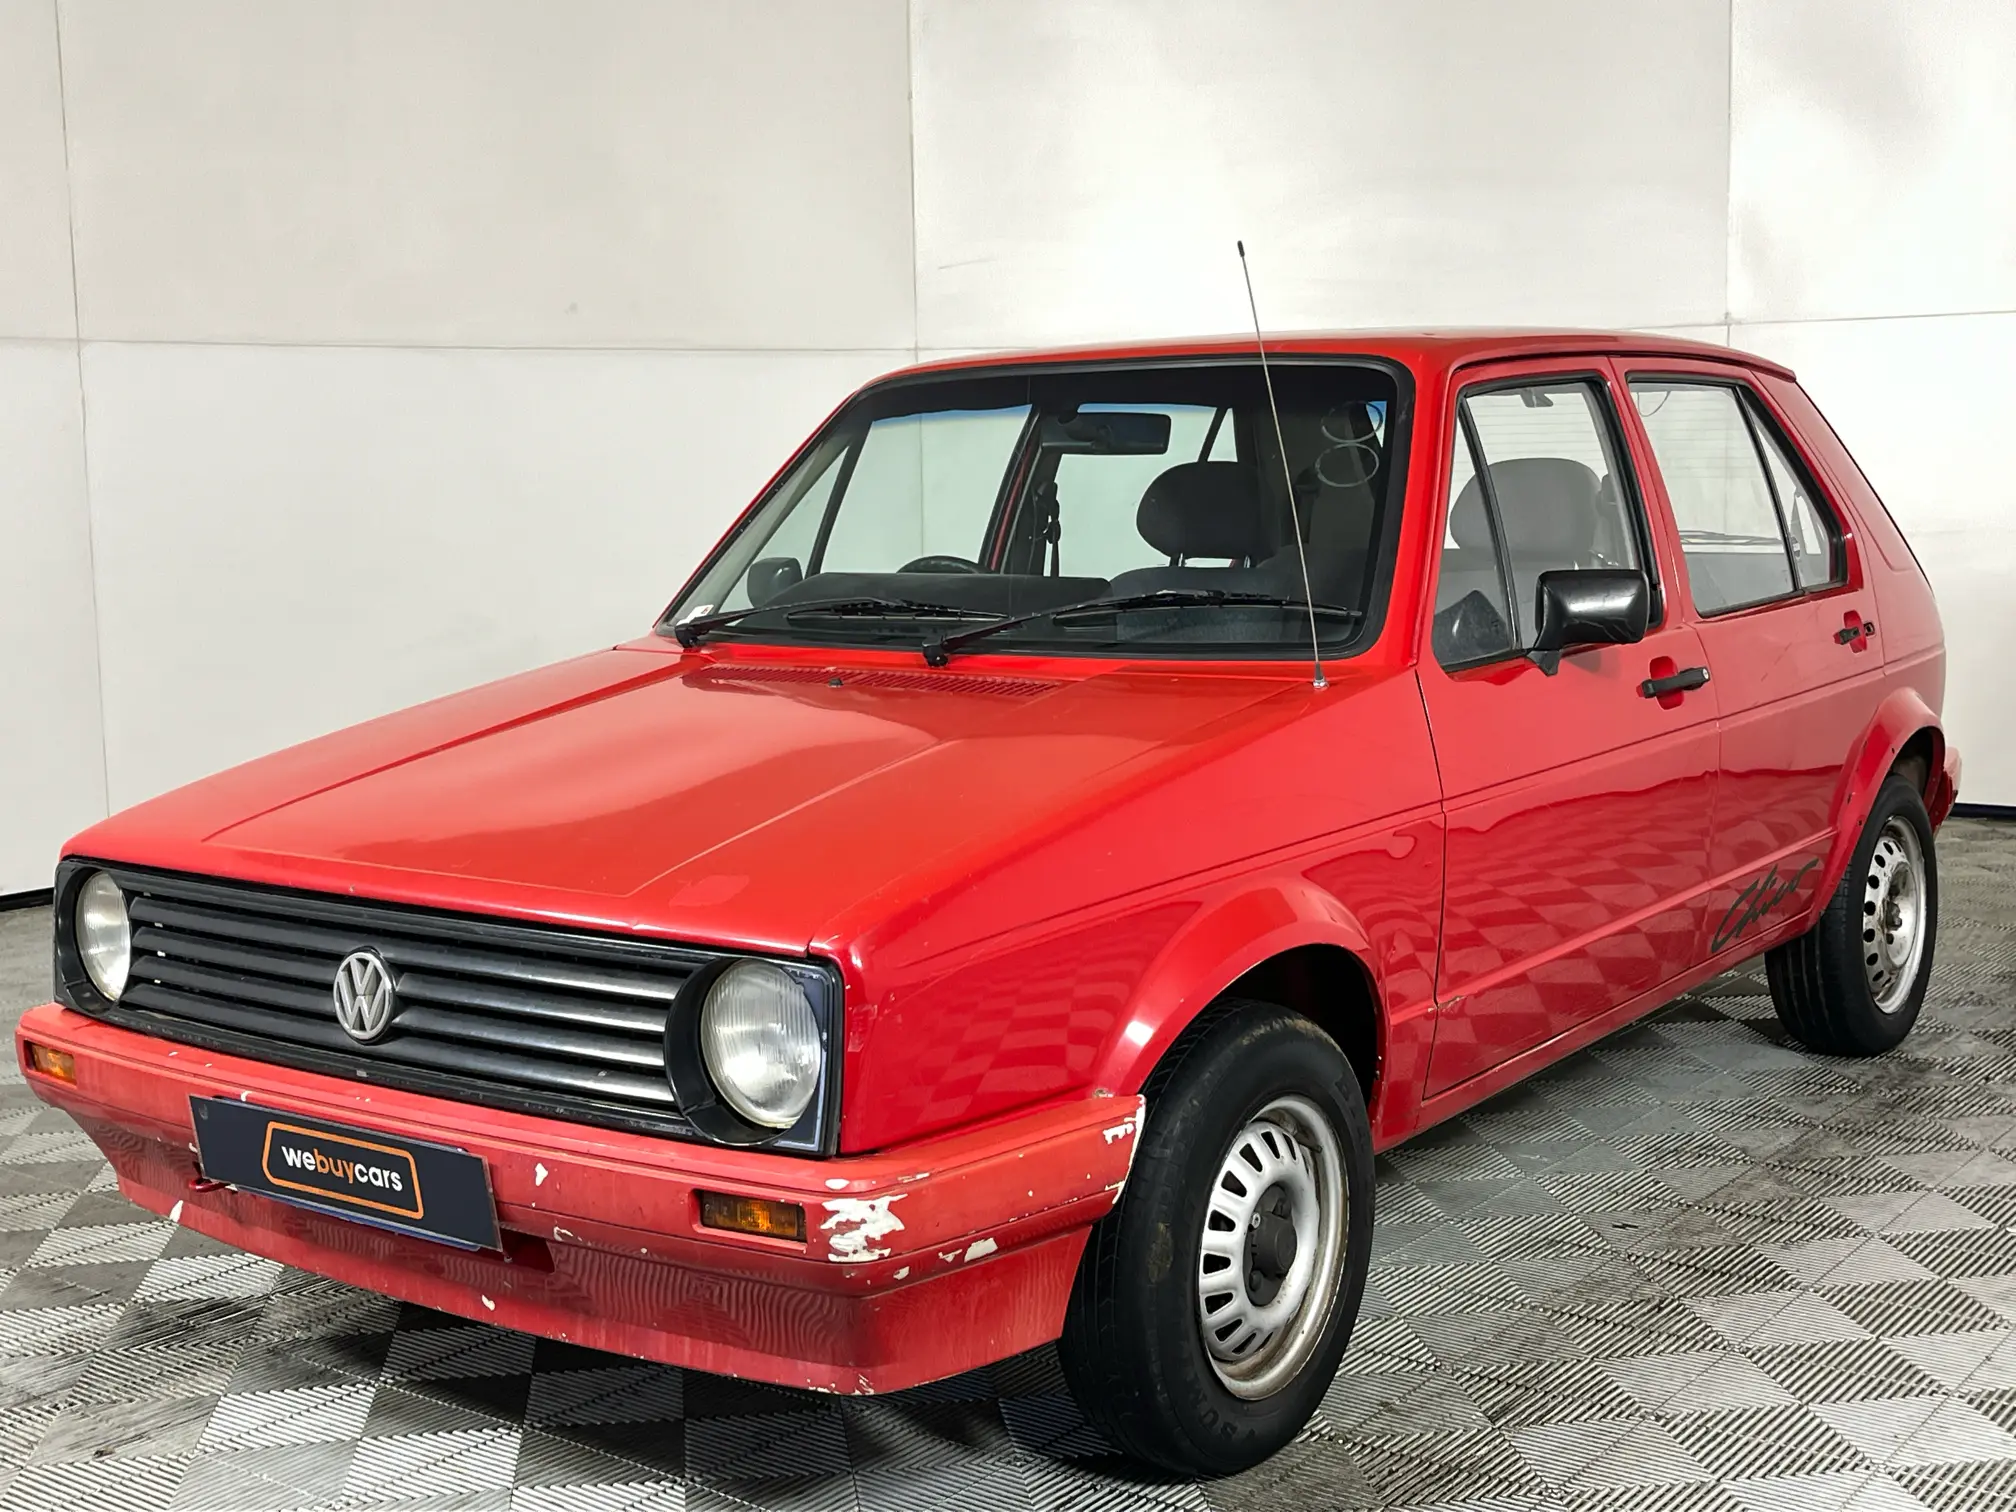 1996 Volkswagen Citi Chico 1.3